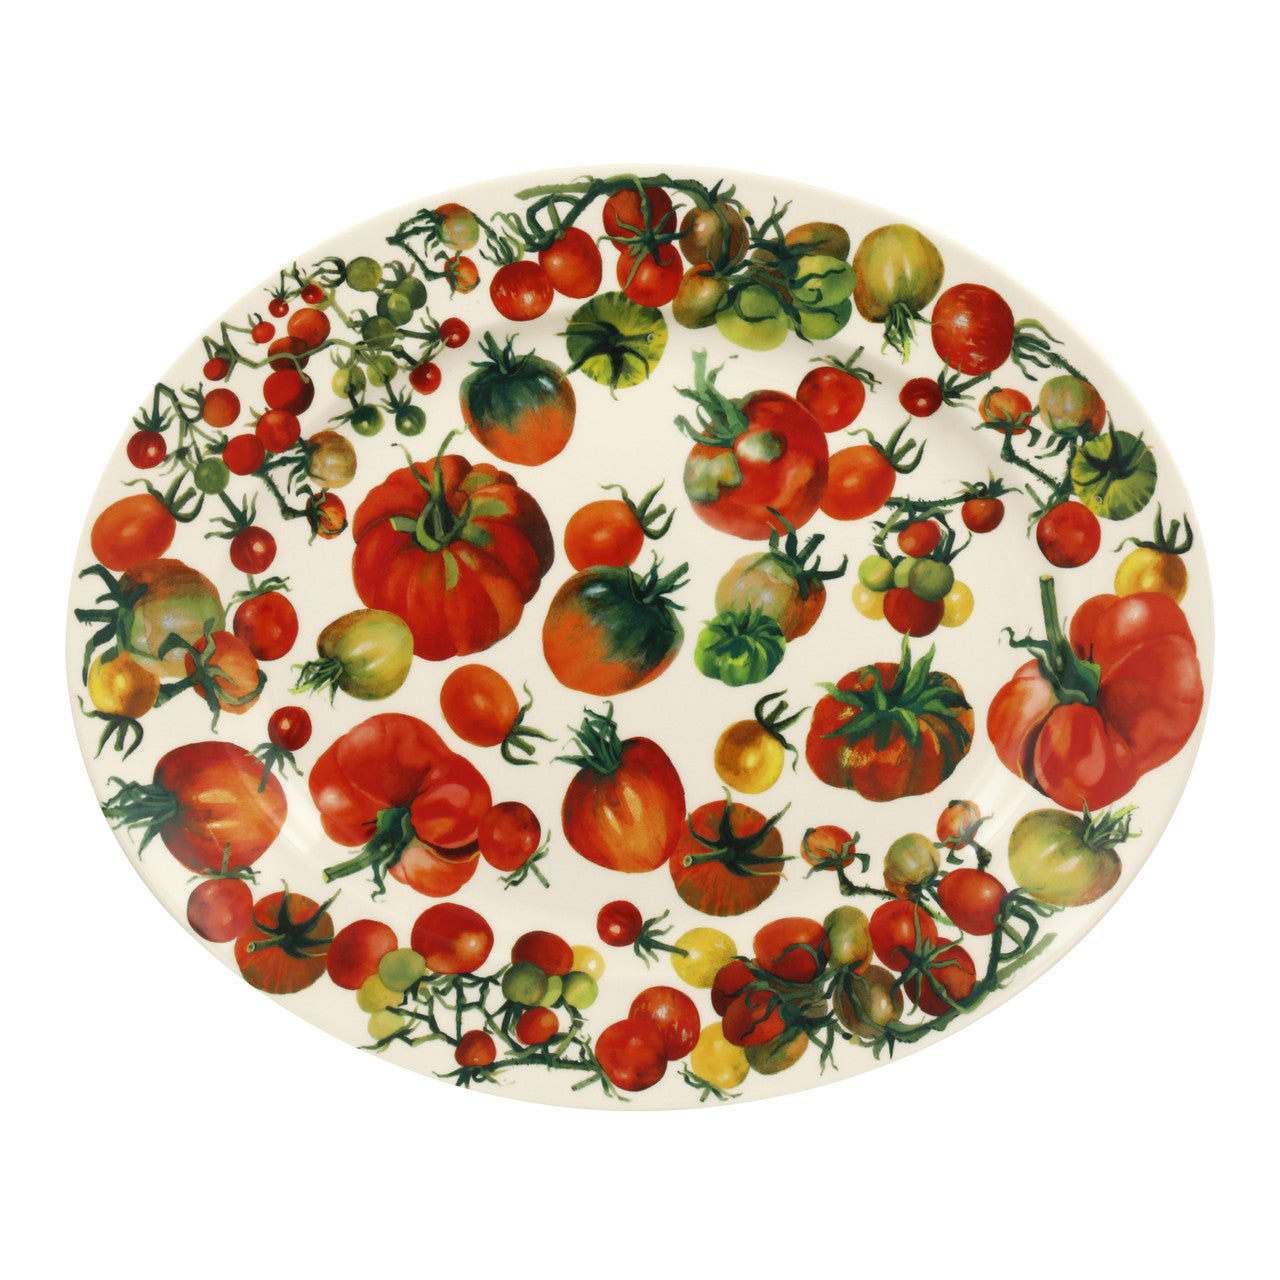 Vegetable Garden Tomatoes Oval platter- Handmade in England.